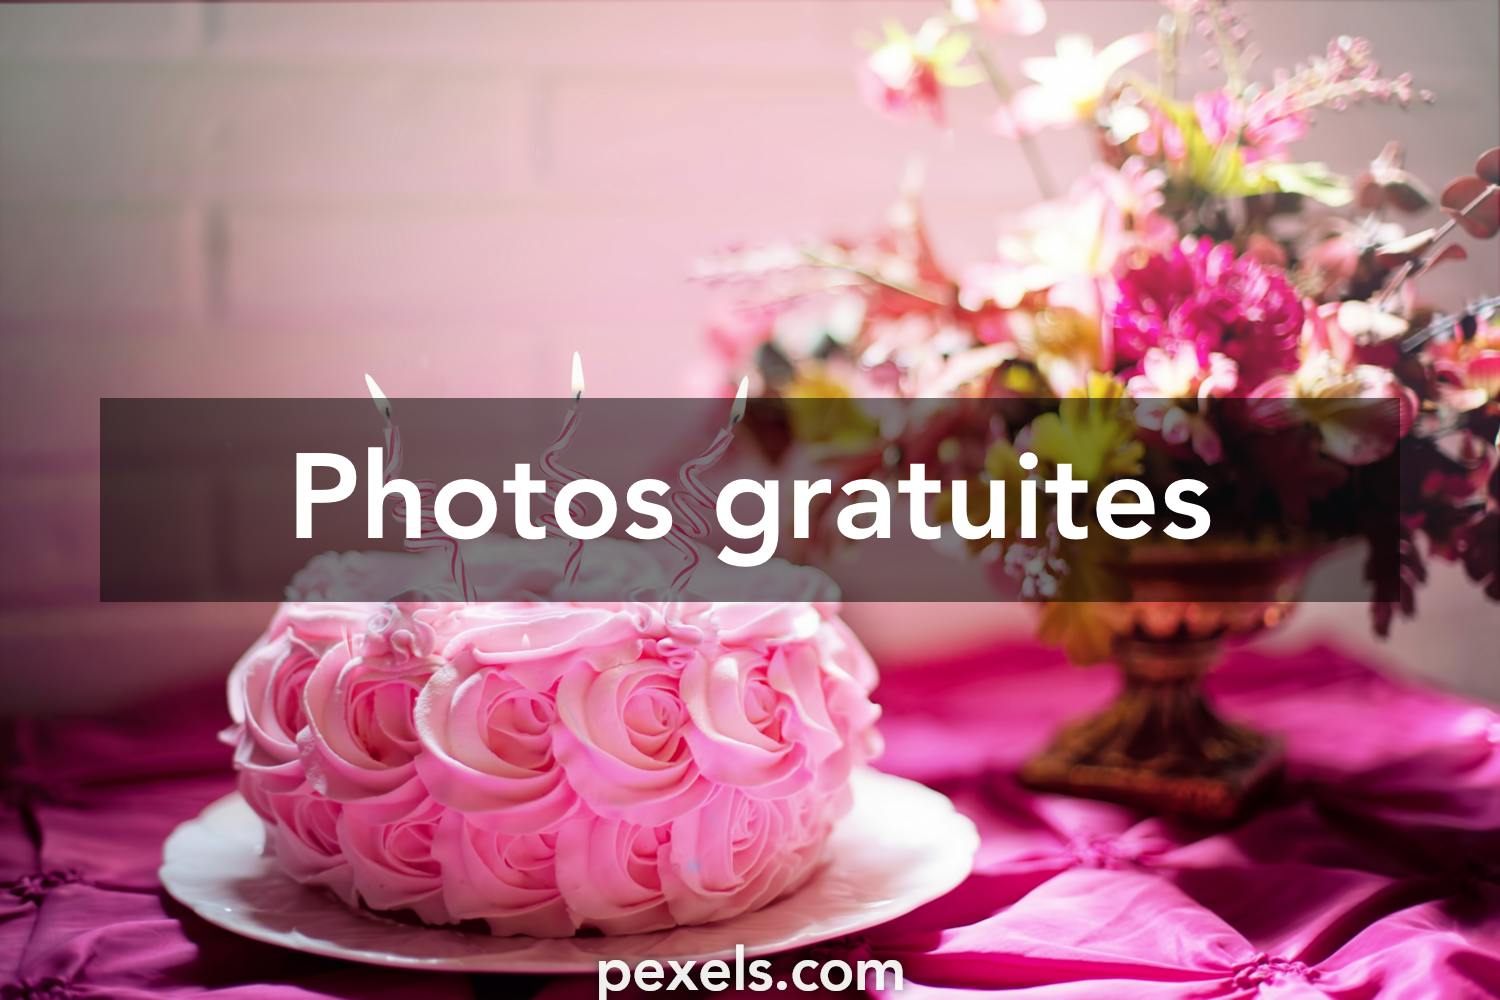 Les 60 000 Meilleures Photos Sur Le Theme Joyeux Anniversaire Telechargement Gratuit Photos Pexels